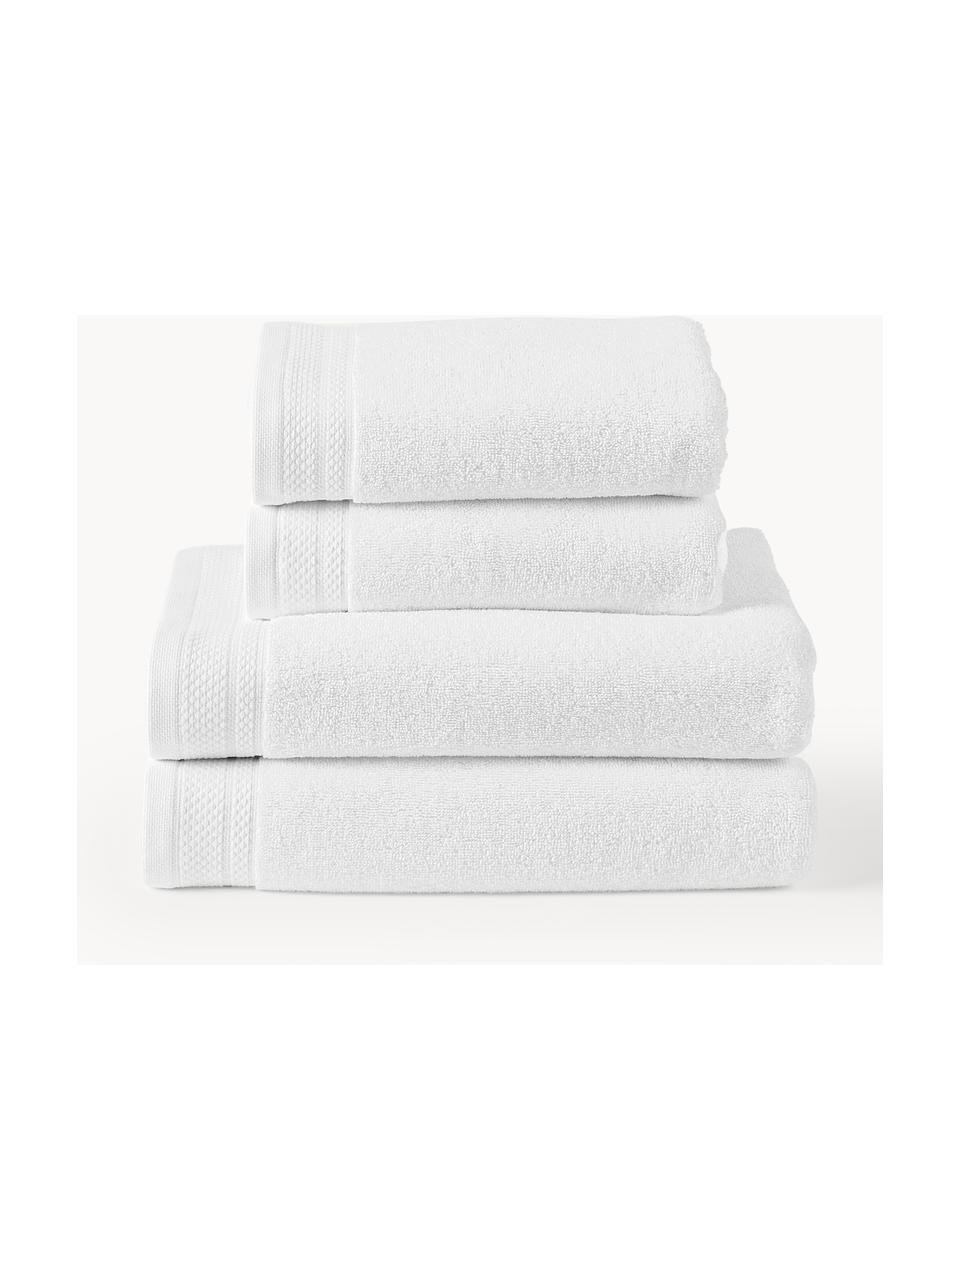 Lot de serviettes de bain en coton bio Premium, tailles variées, 100 % coton bio certifié GOTS (par GCL International, GCL-300517)
Qualité supérieure 600 g/m², Blanc, 4 éléments (2 serviettes de toilette et 2 draps de bain)